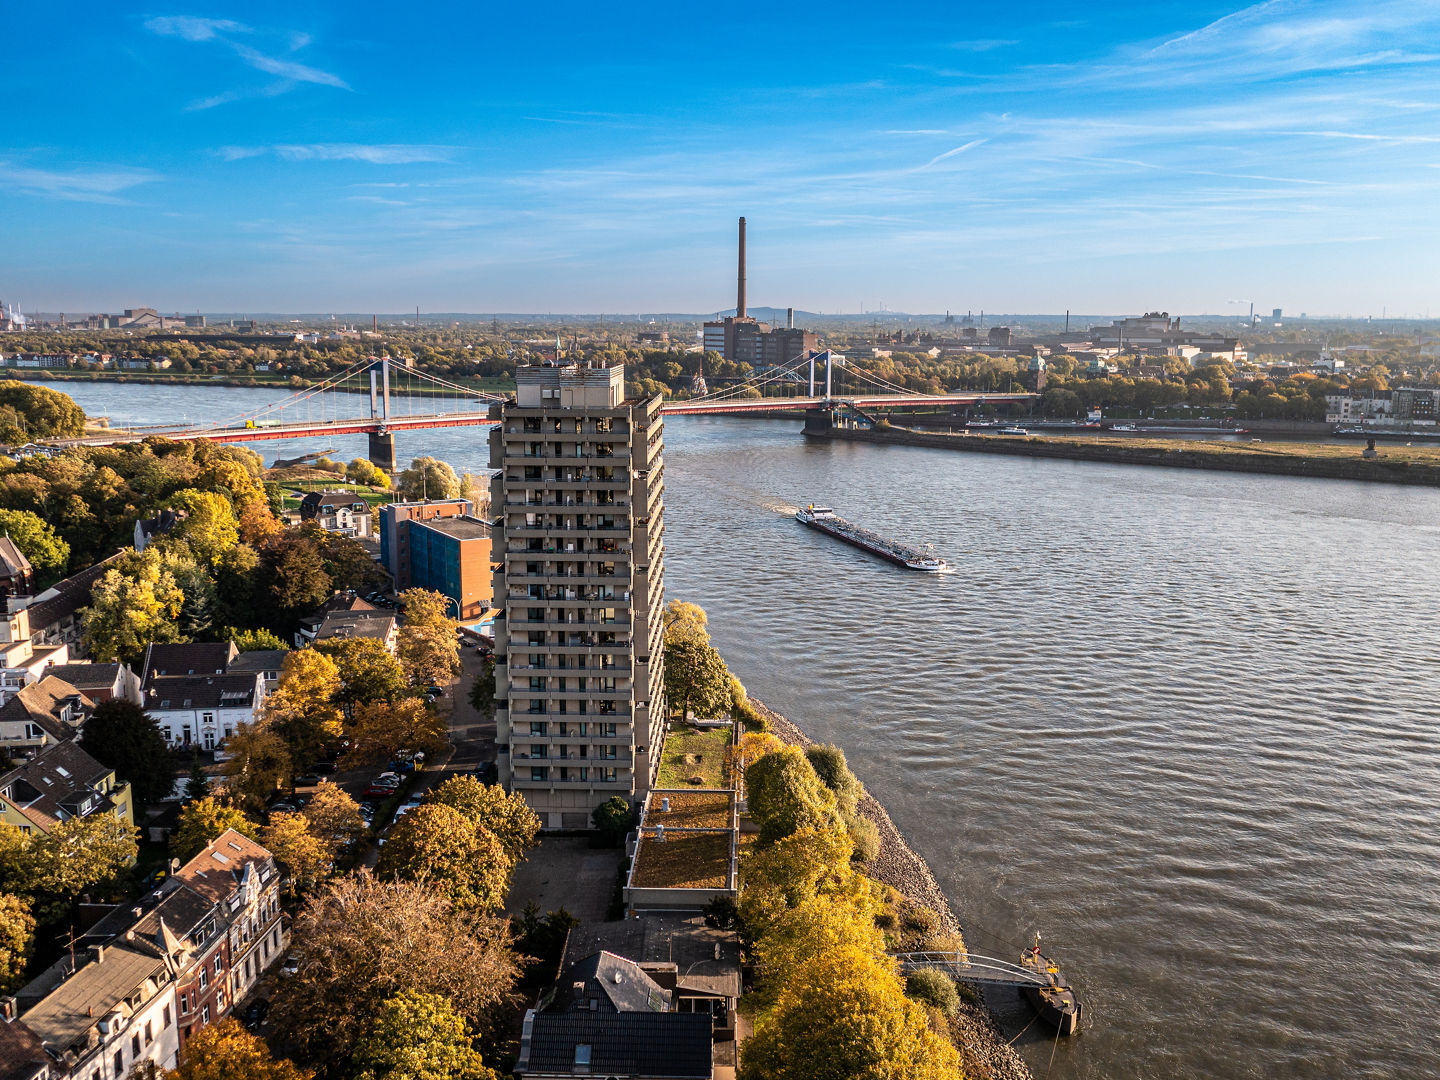 Duisburg Ruhr Area. Rhein River. Drone Aerial in autumn. High quality photo